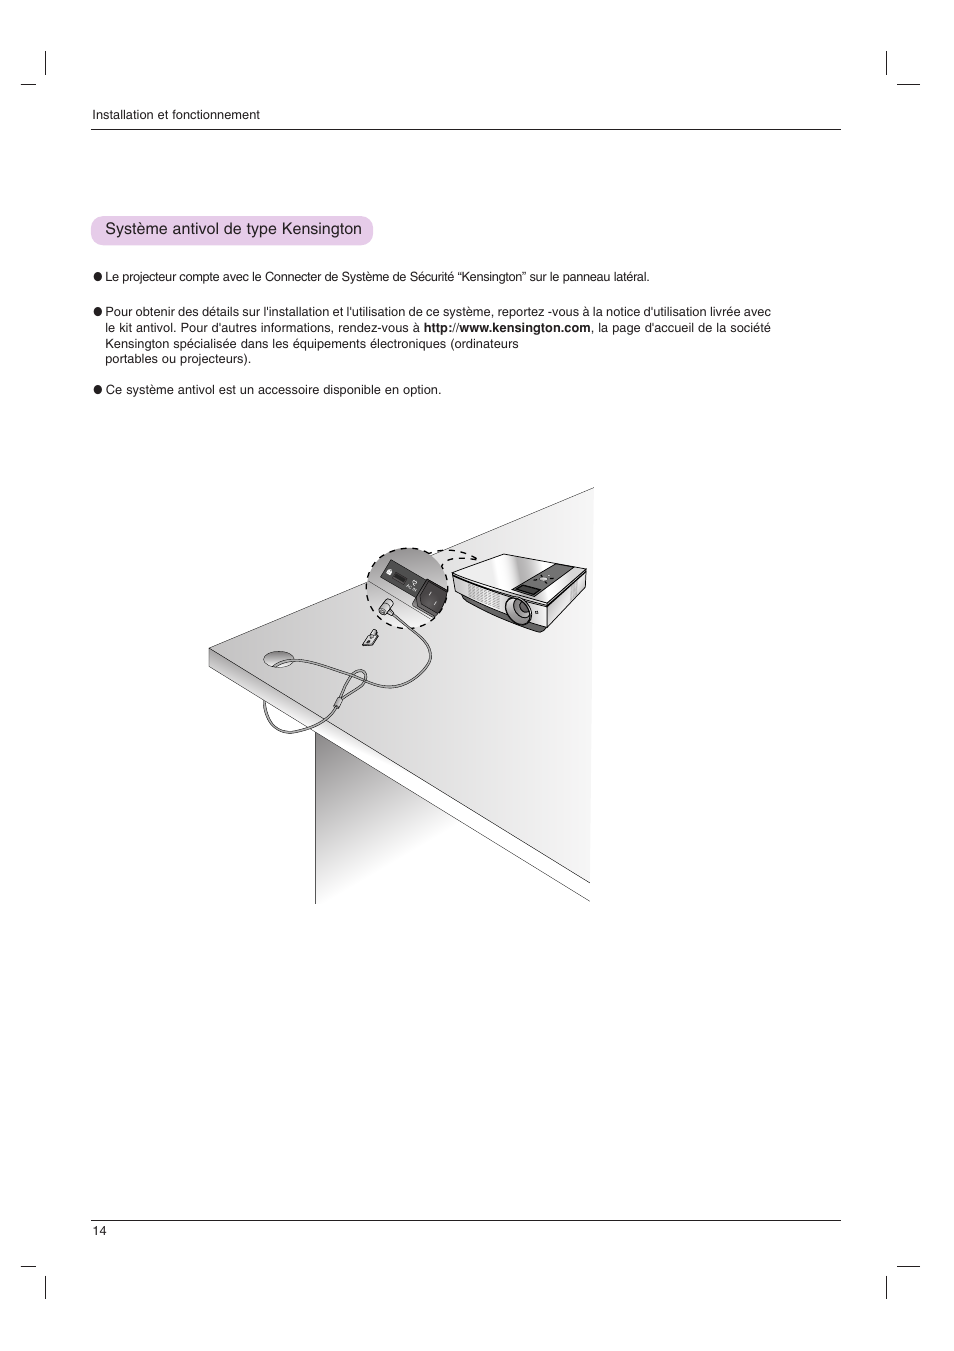 Système antivol de type kensington | LG BX401C Manuel d'utilisation | Page 14 / 42